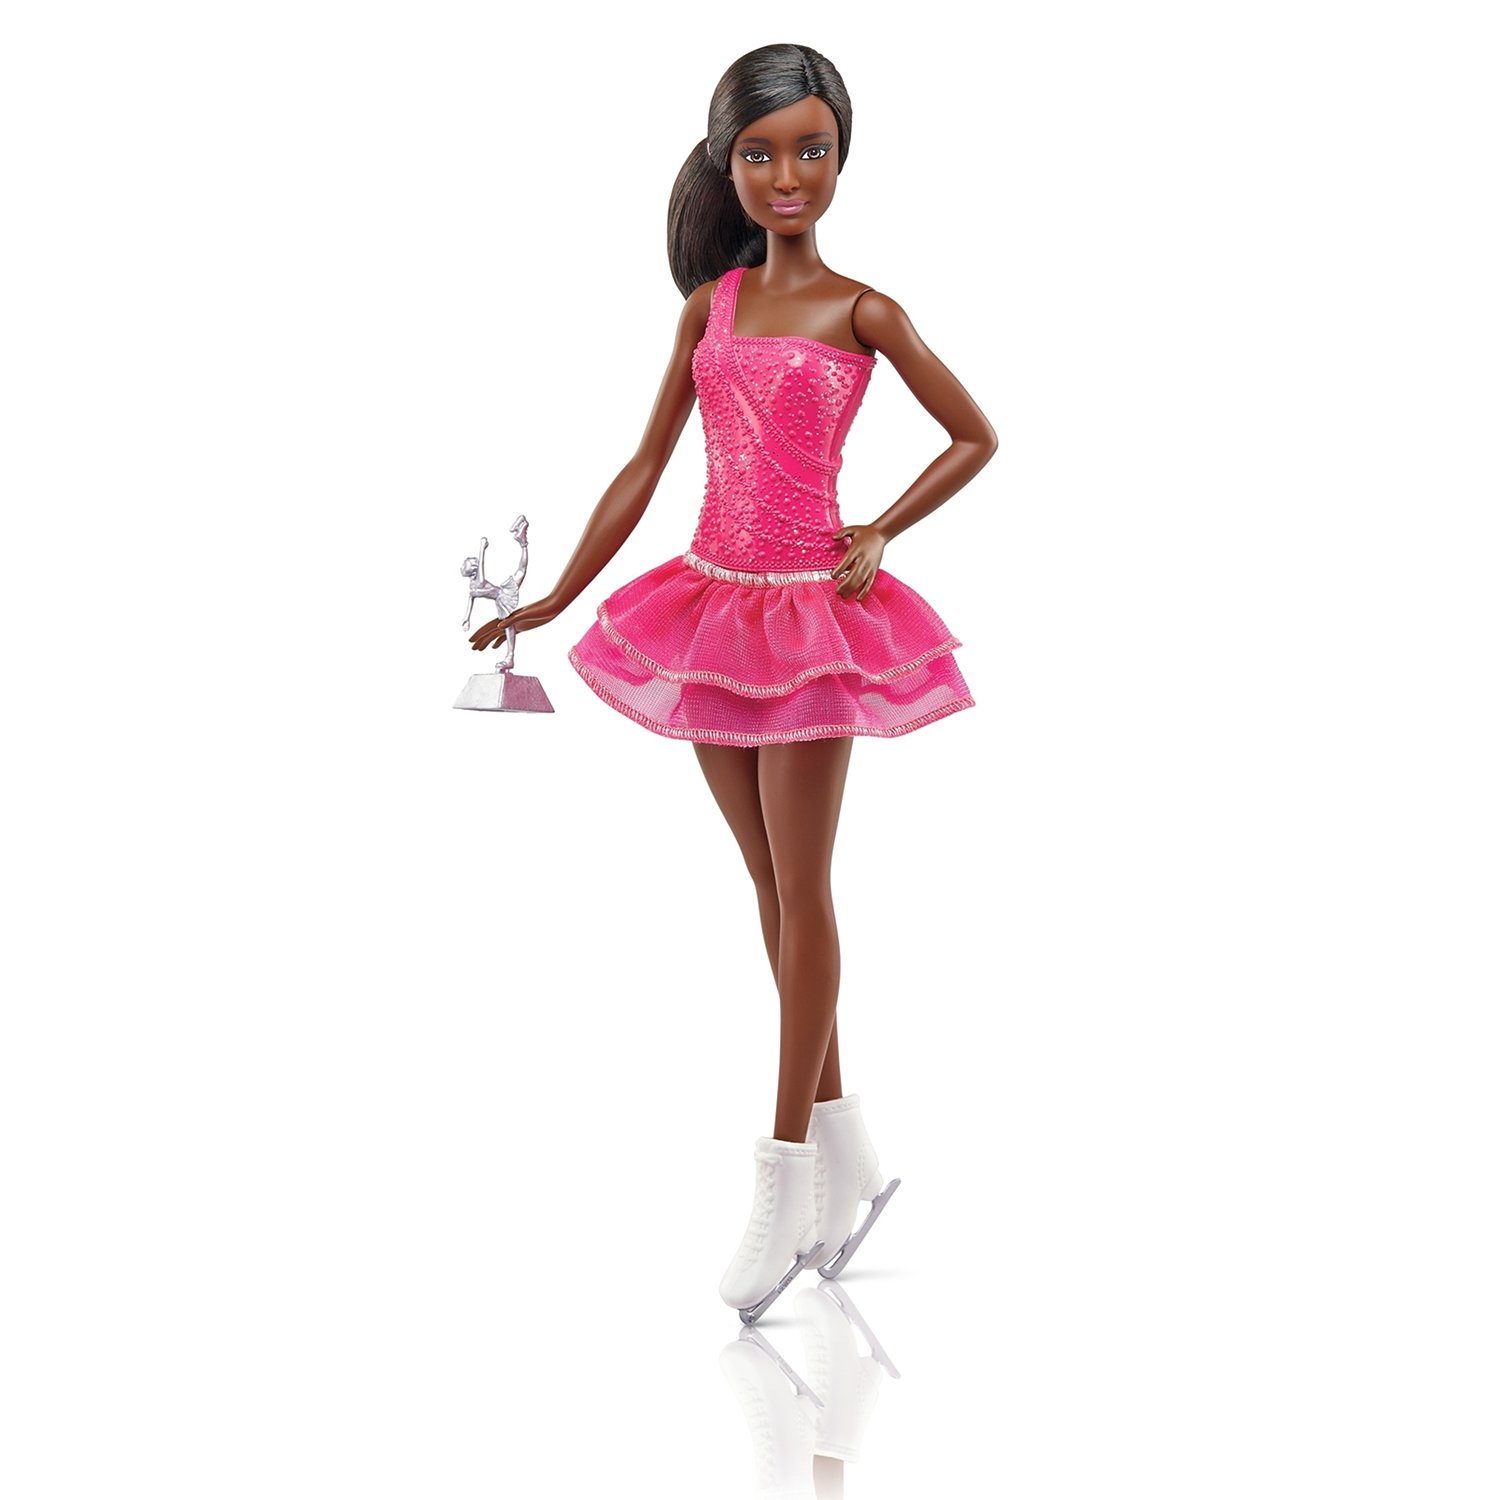 Кукла Barbie 